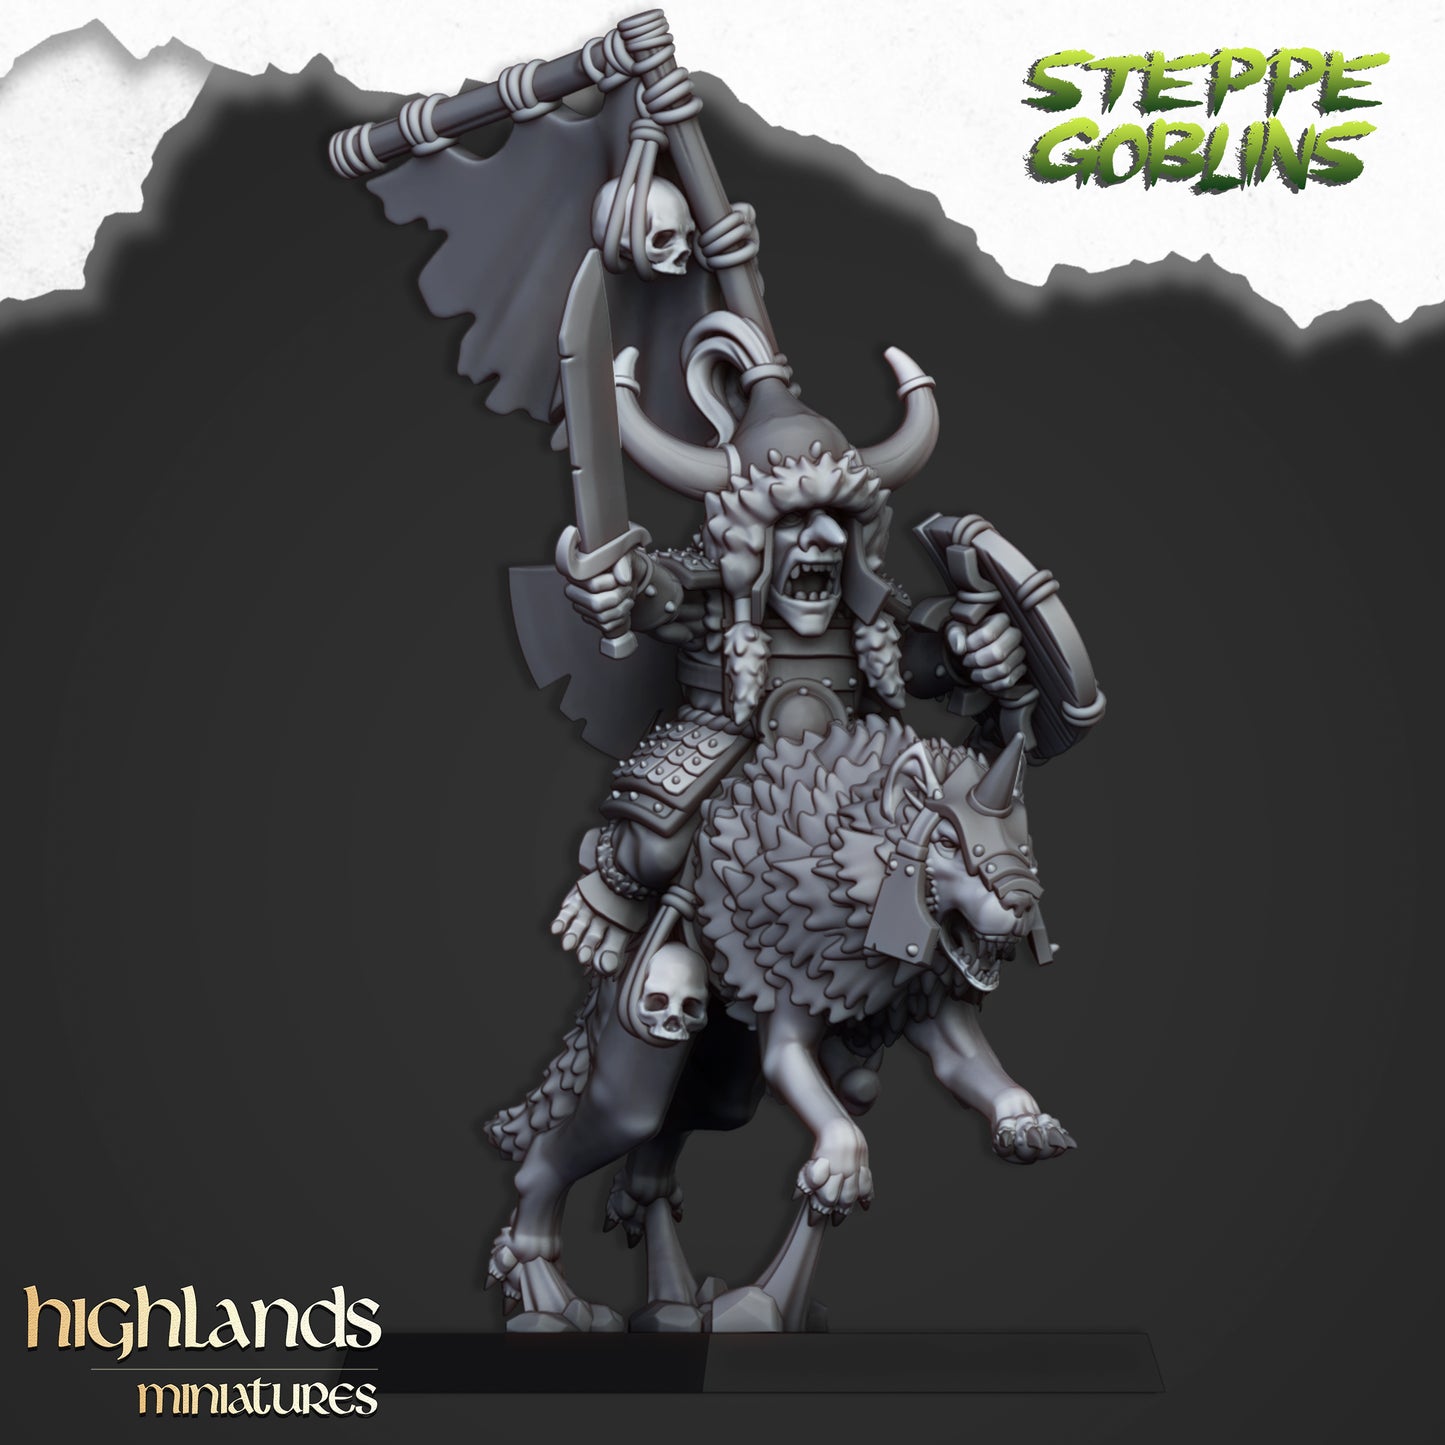 Steppe Goblin Khan from Highlands Miniatures